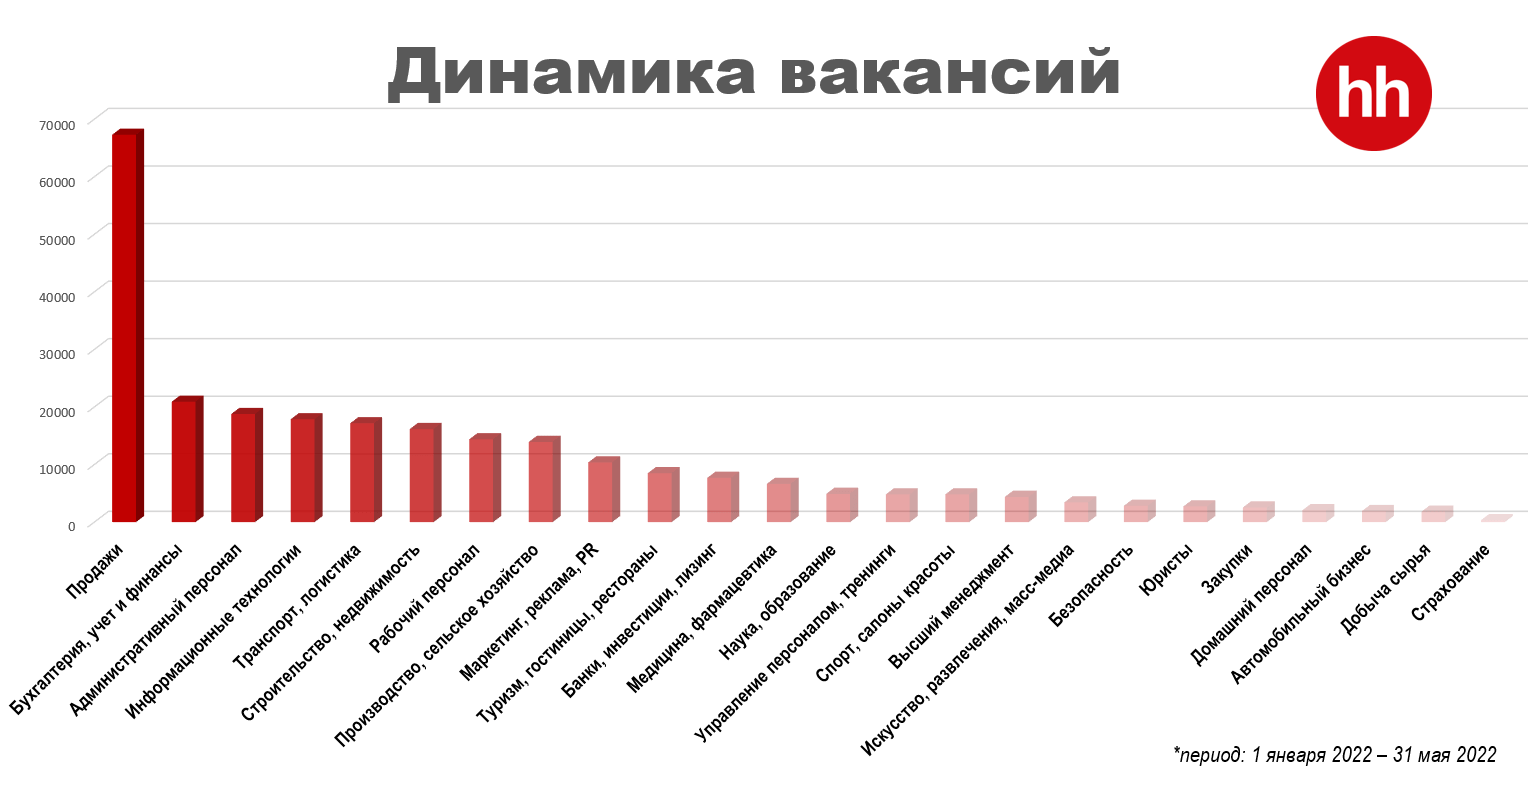 Адвокаты не в тренде. Какие профессии стали самыми востребованными в Казахстане в 2022 году